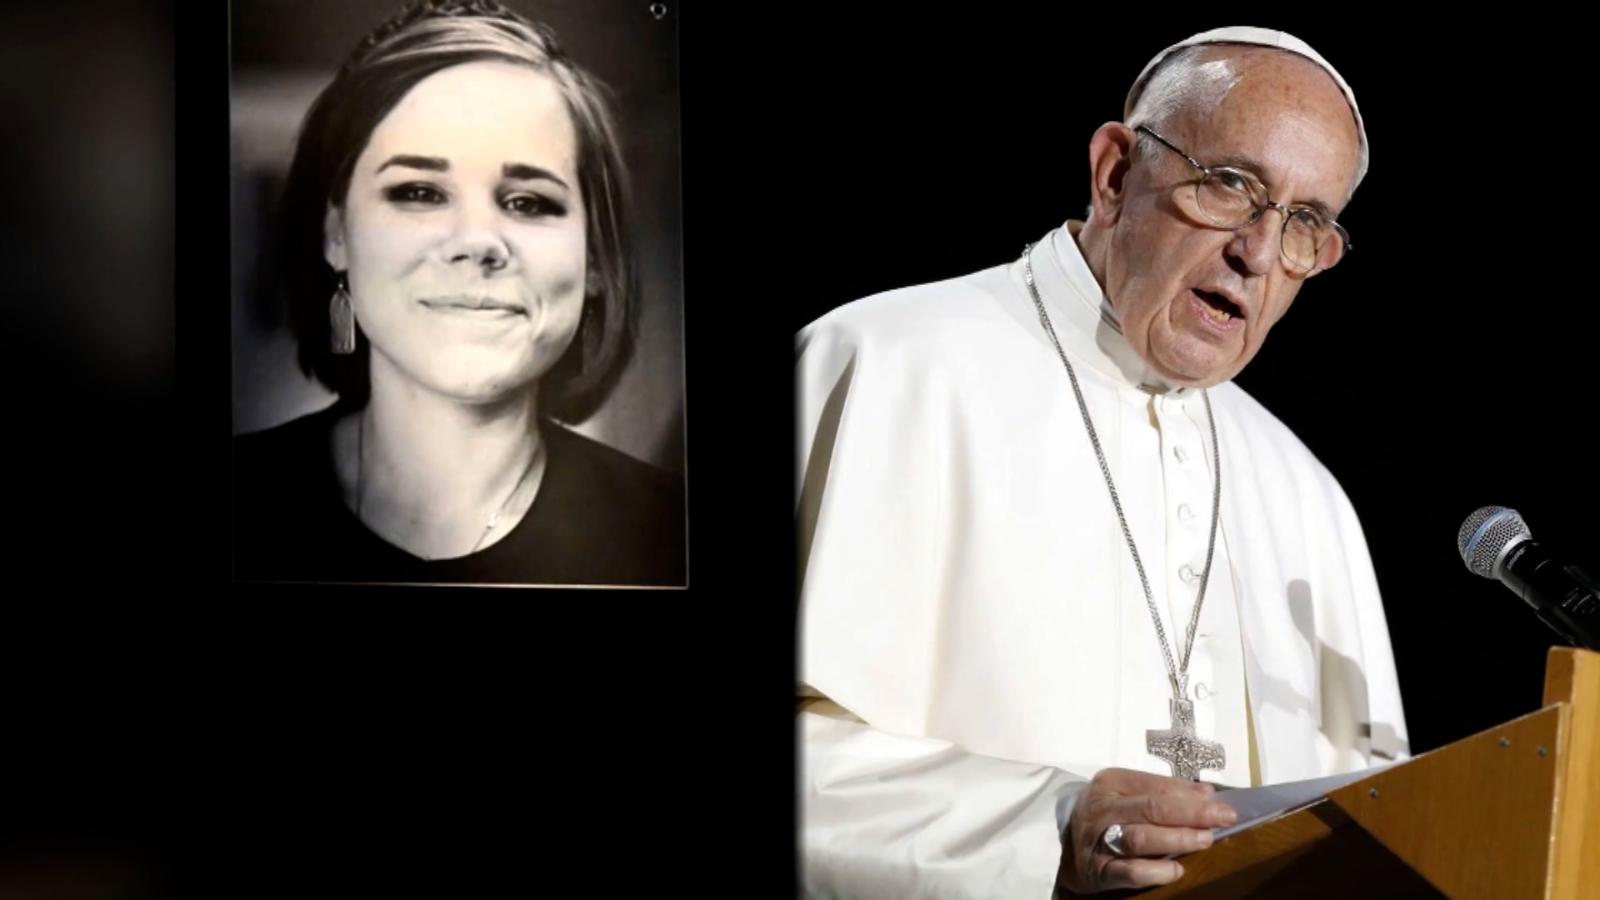 El Papa Francisco se refirió al asesinato de Darya Dugina en el Vaticano este miércoles